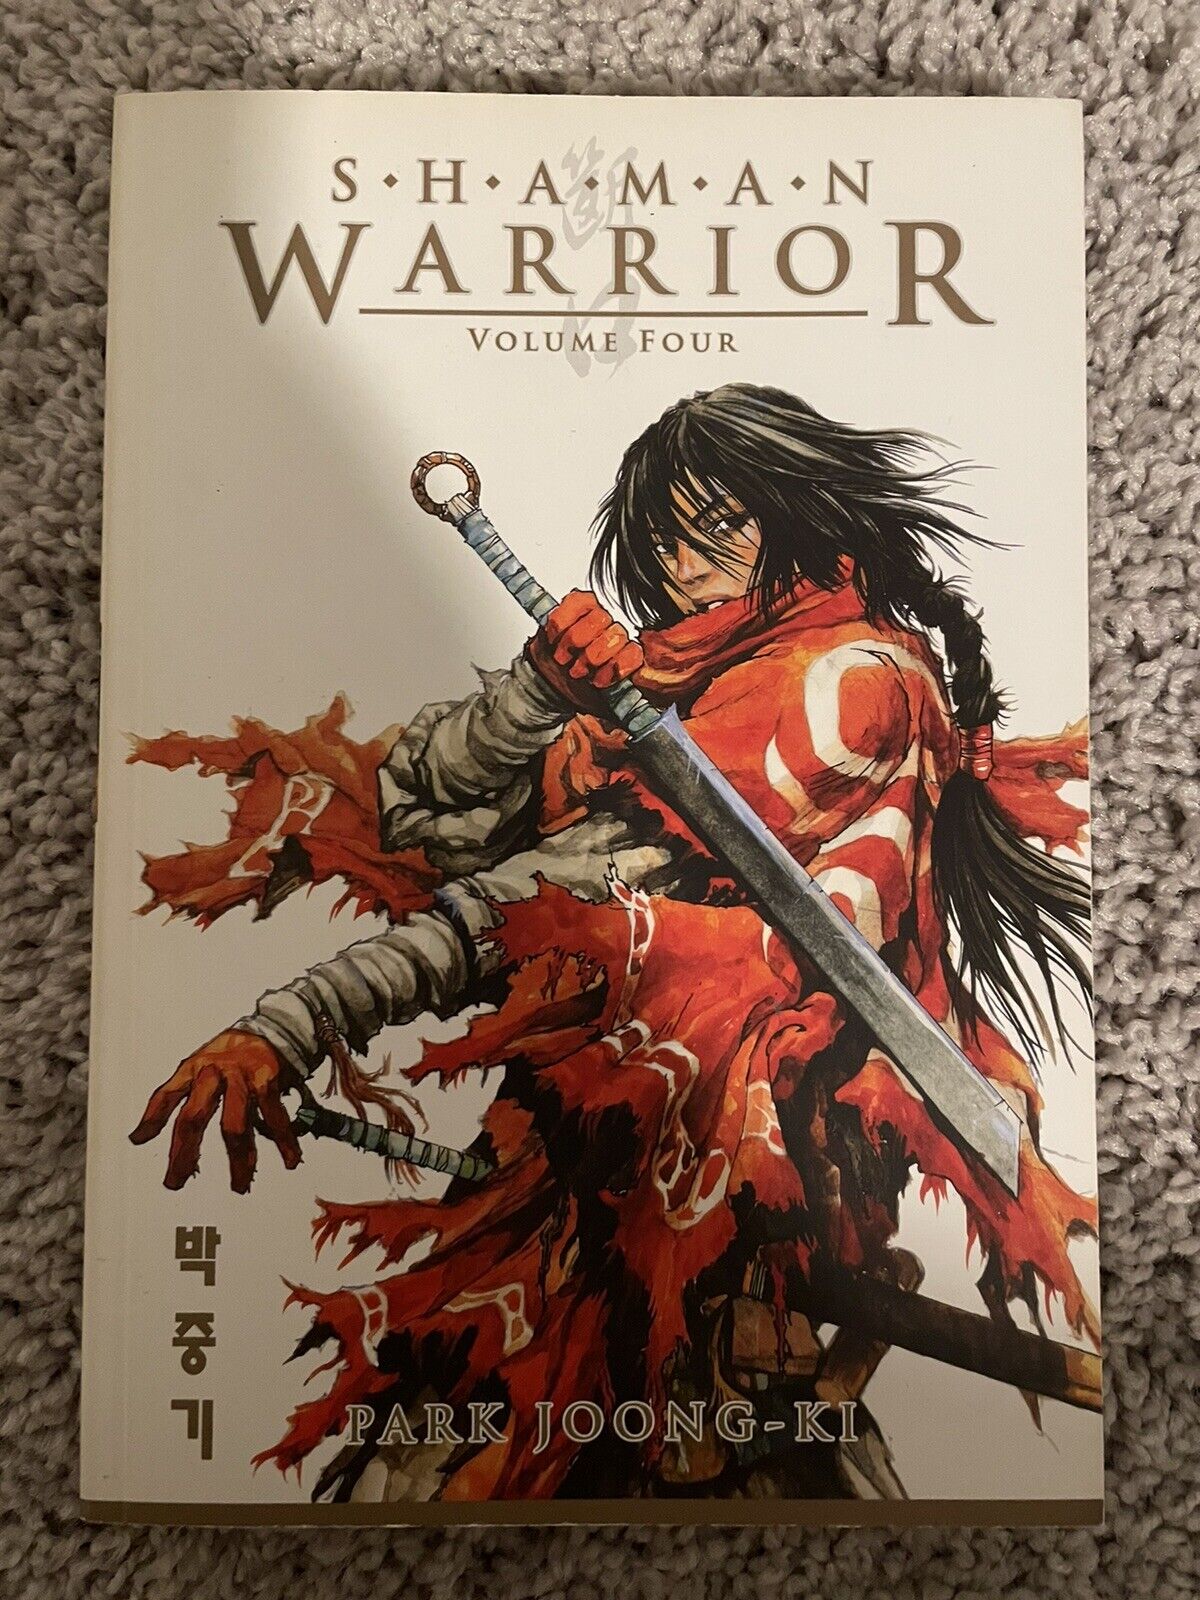 Shaman Warrior Volume 4 Manga by Park Joong-ki